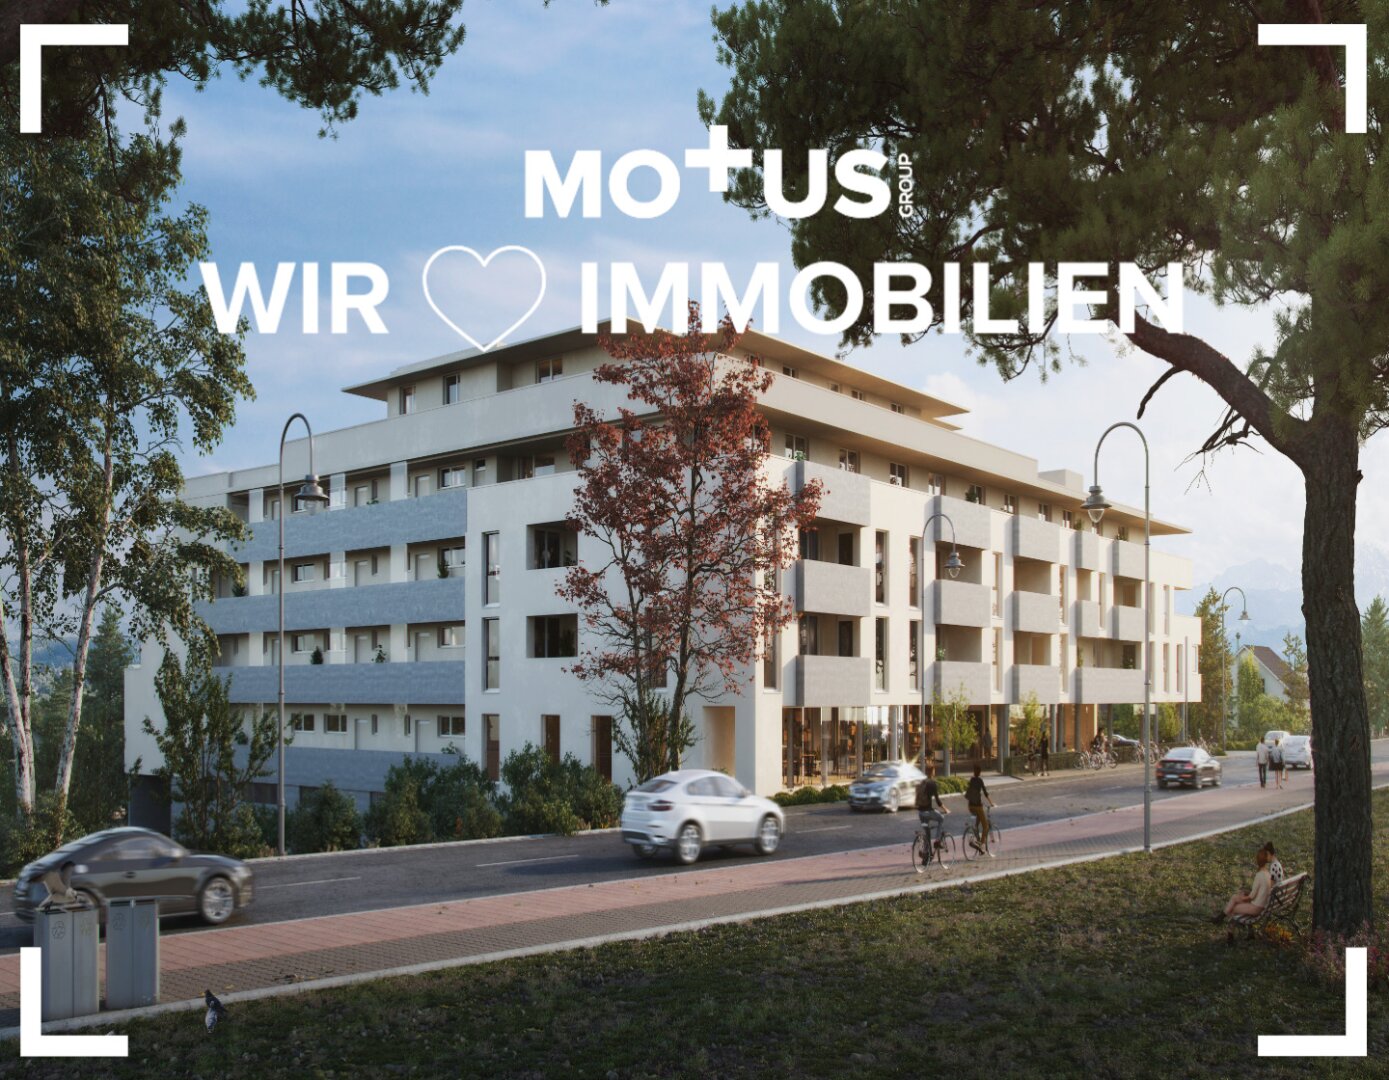 VICUS Kalsdorf | modernster Wohn-Komfort mit Außenfläche